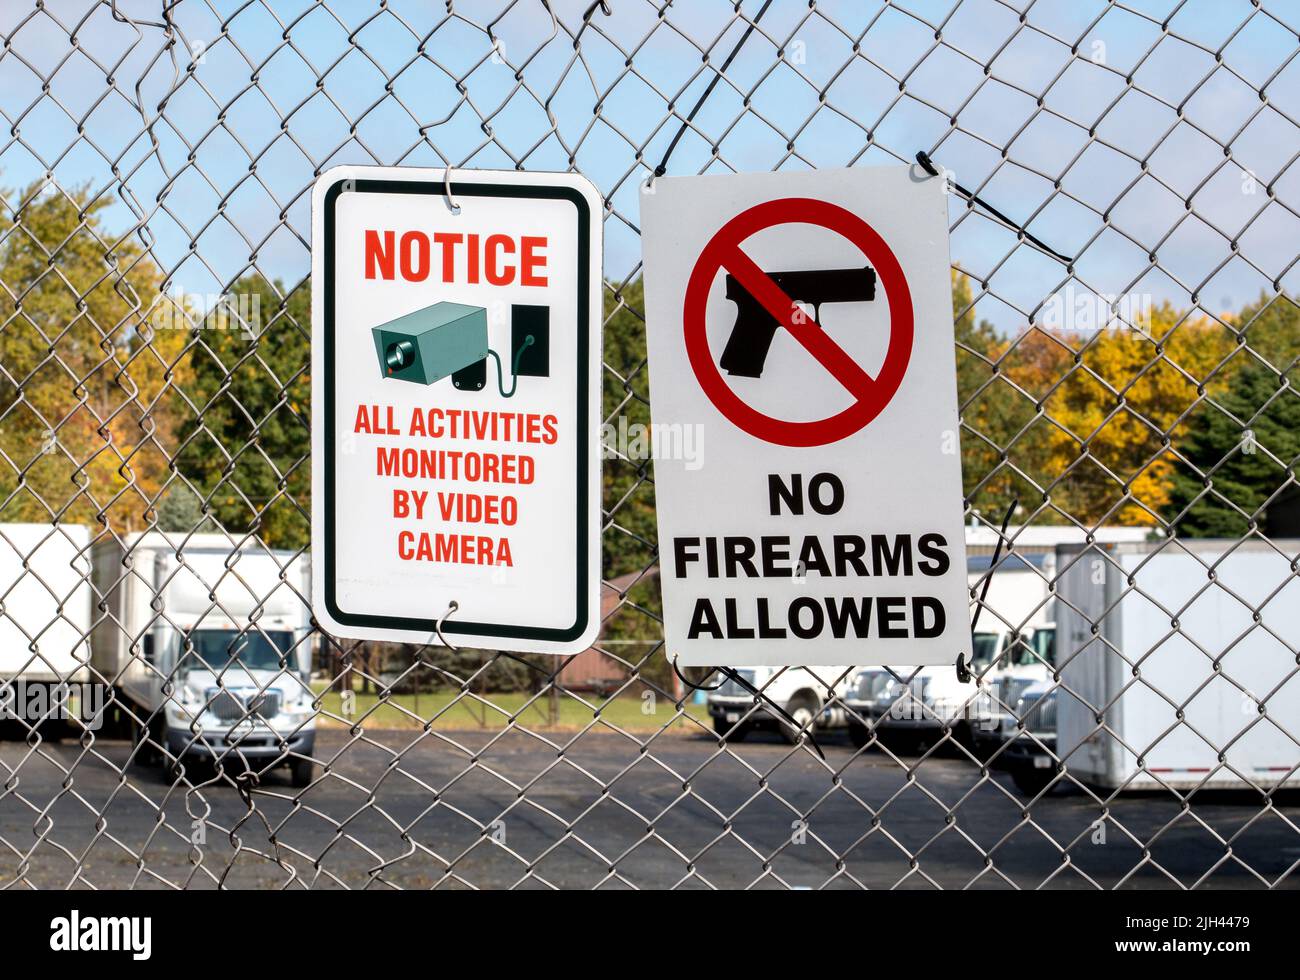 Schilder an einem Kettengliederzaun außerhalb eines Unternehmens, Feuerwaffen sind nicht erlaubt und Videokameras überwachen den Bereich. Stockfoto